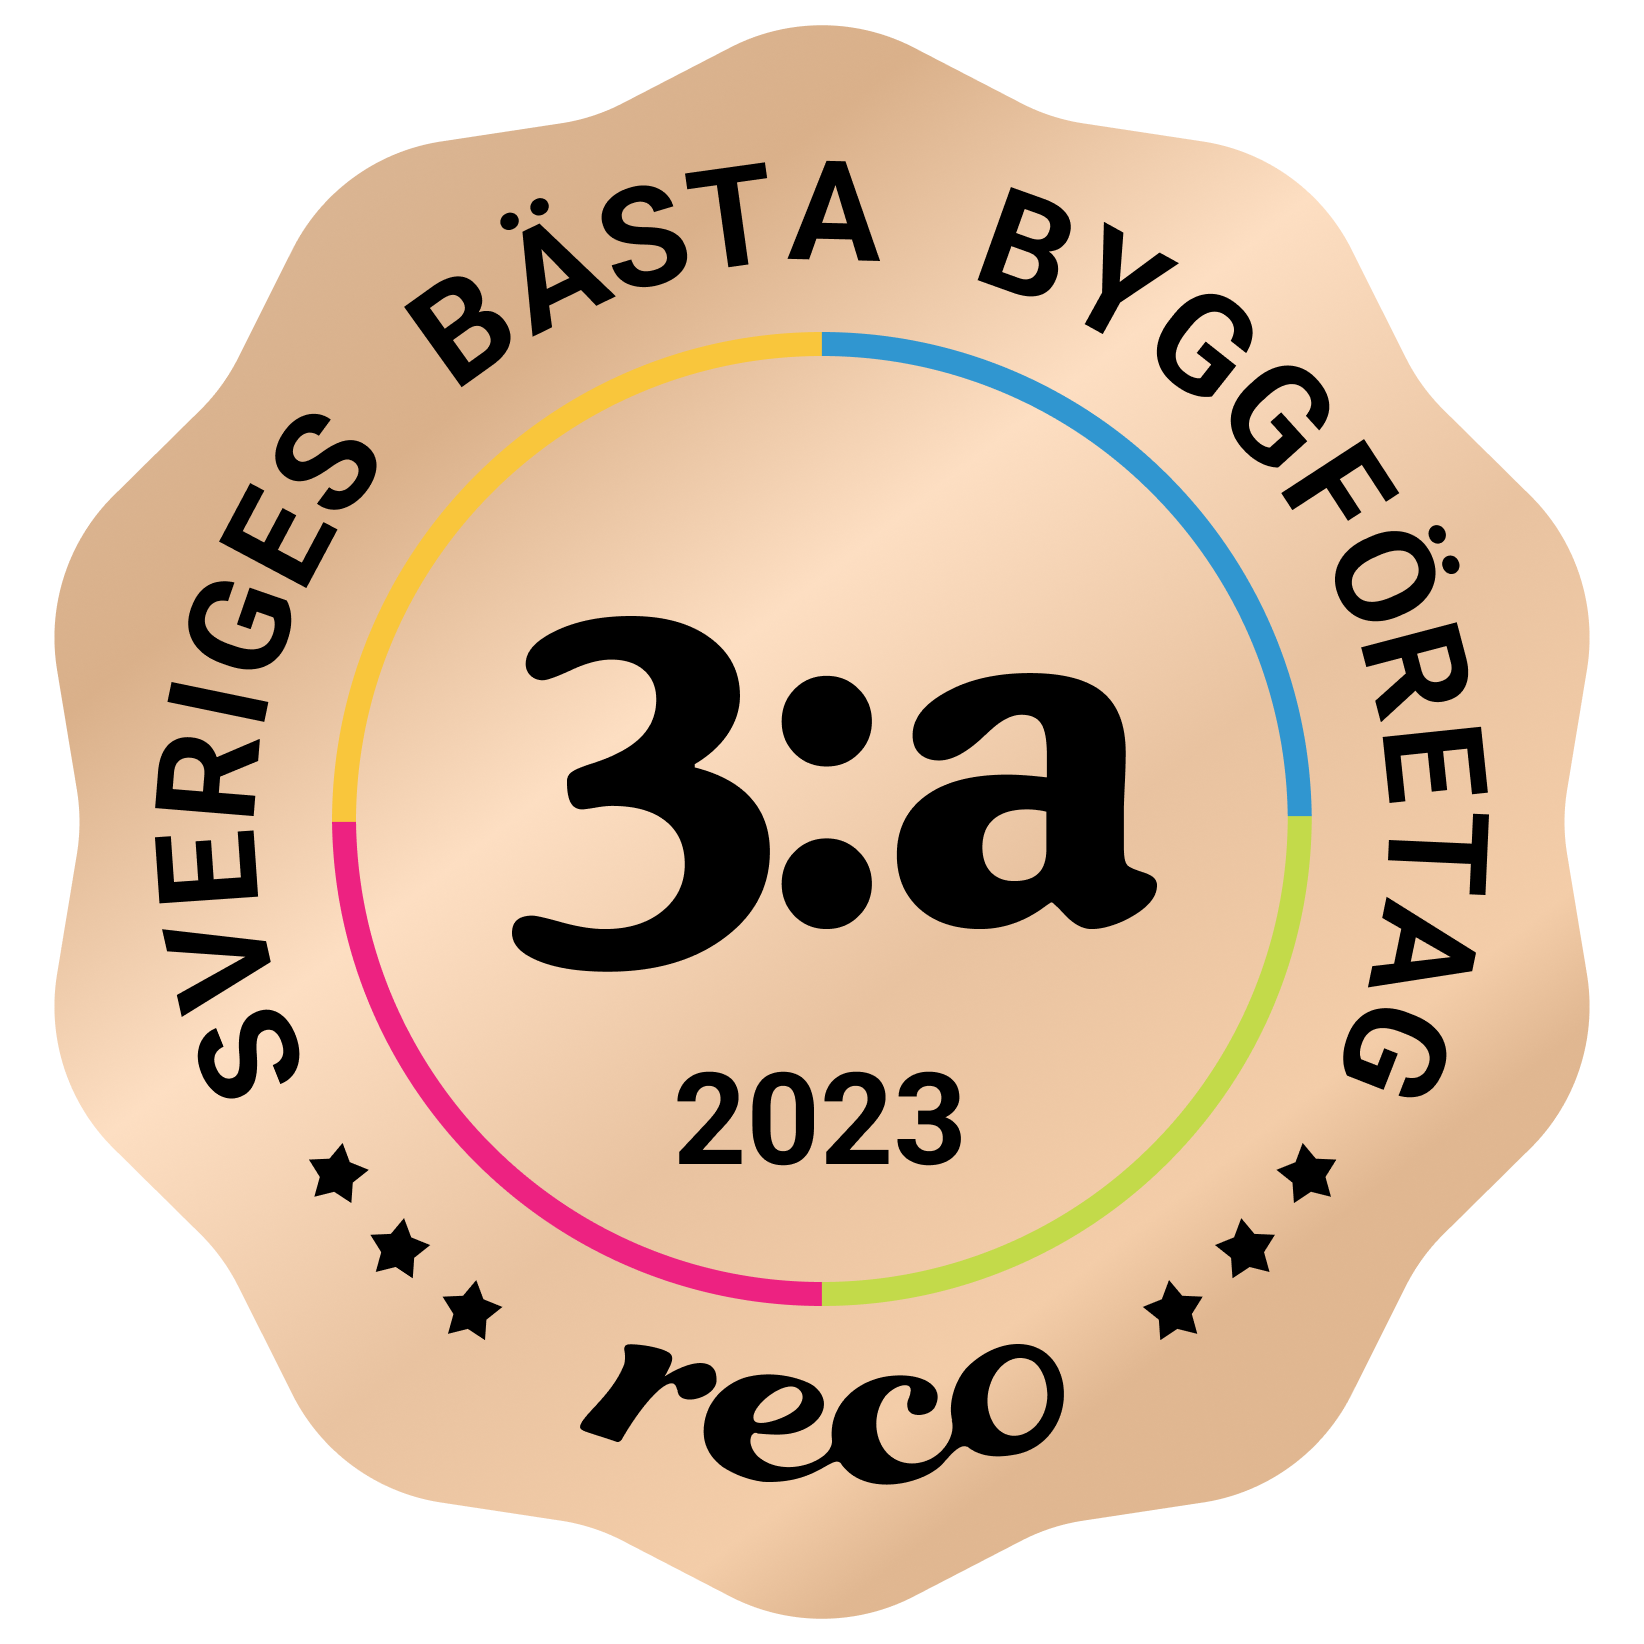 Bagde - Best in Sweden - Byggfirma - Third@2x